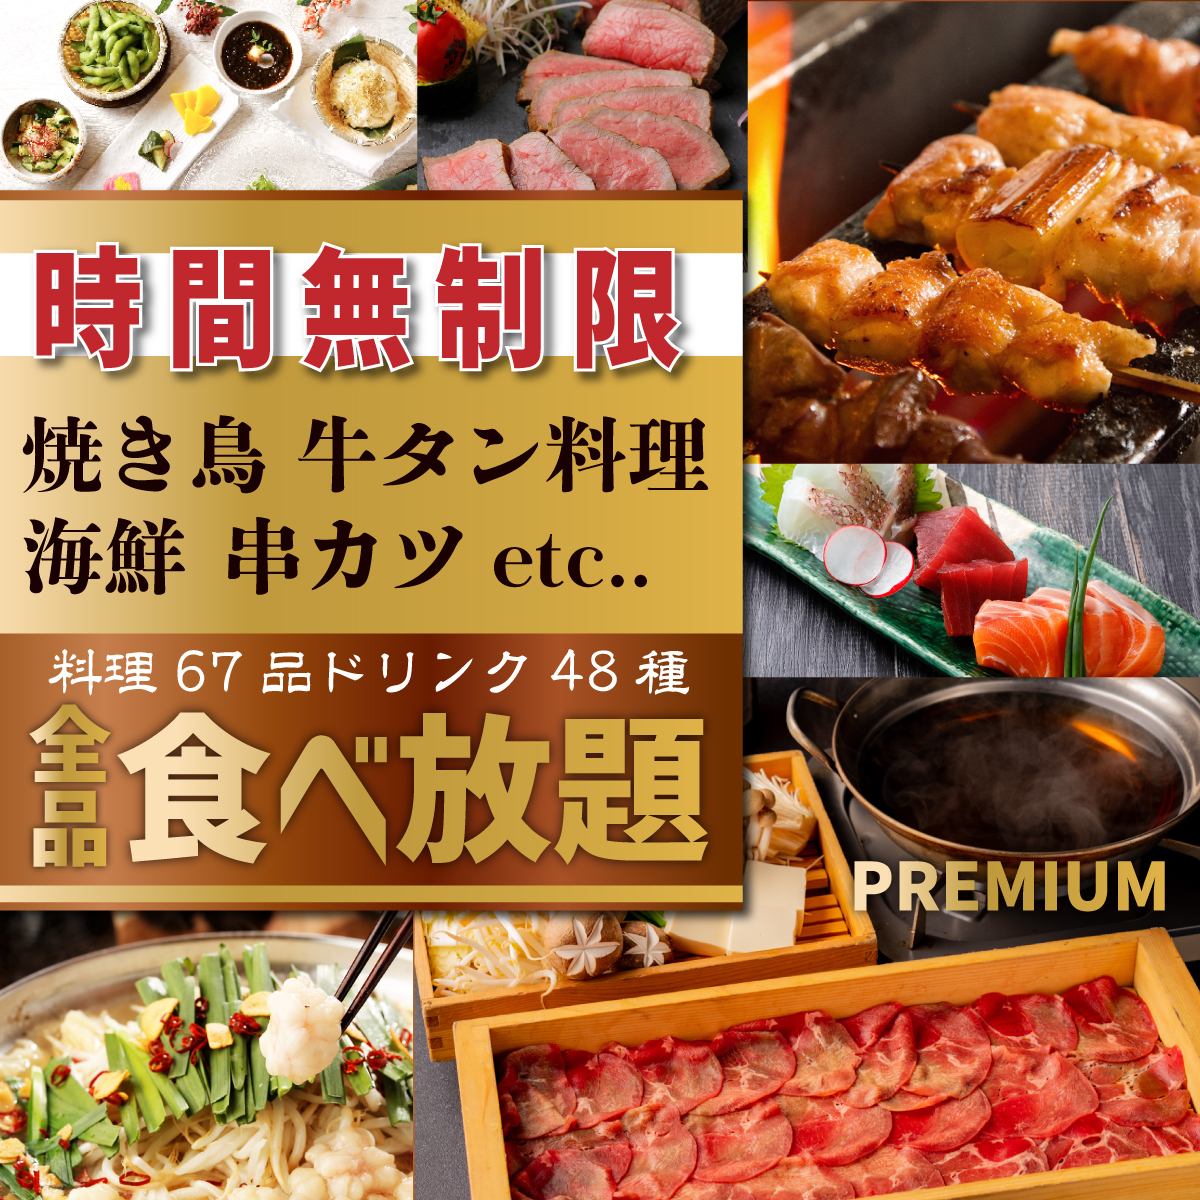 쇠고기와 야키토리, 해물 등 전품 뷔페가 무제한 4000 엔!